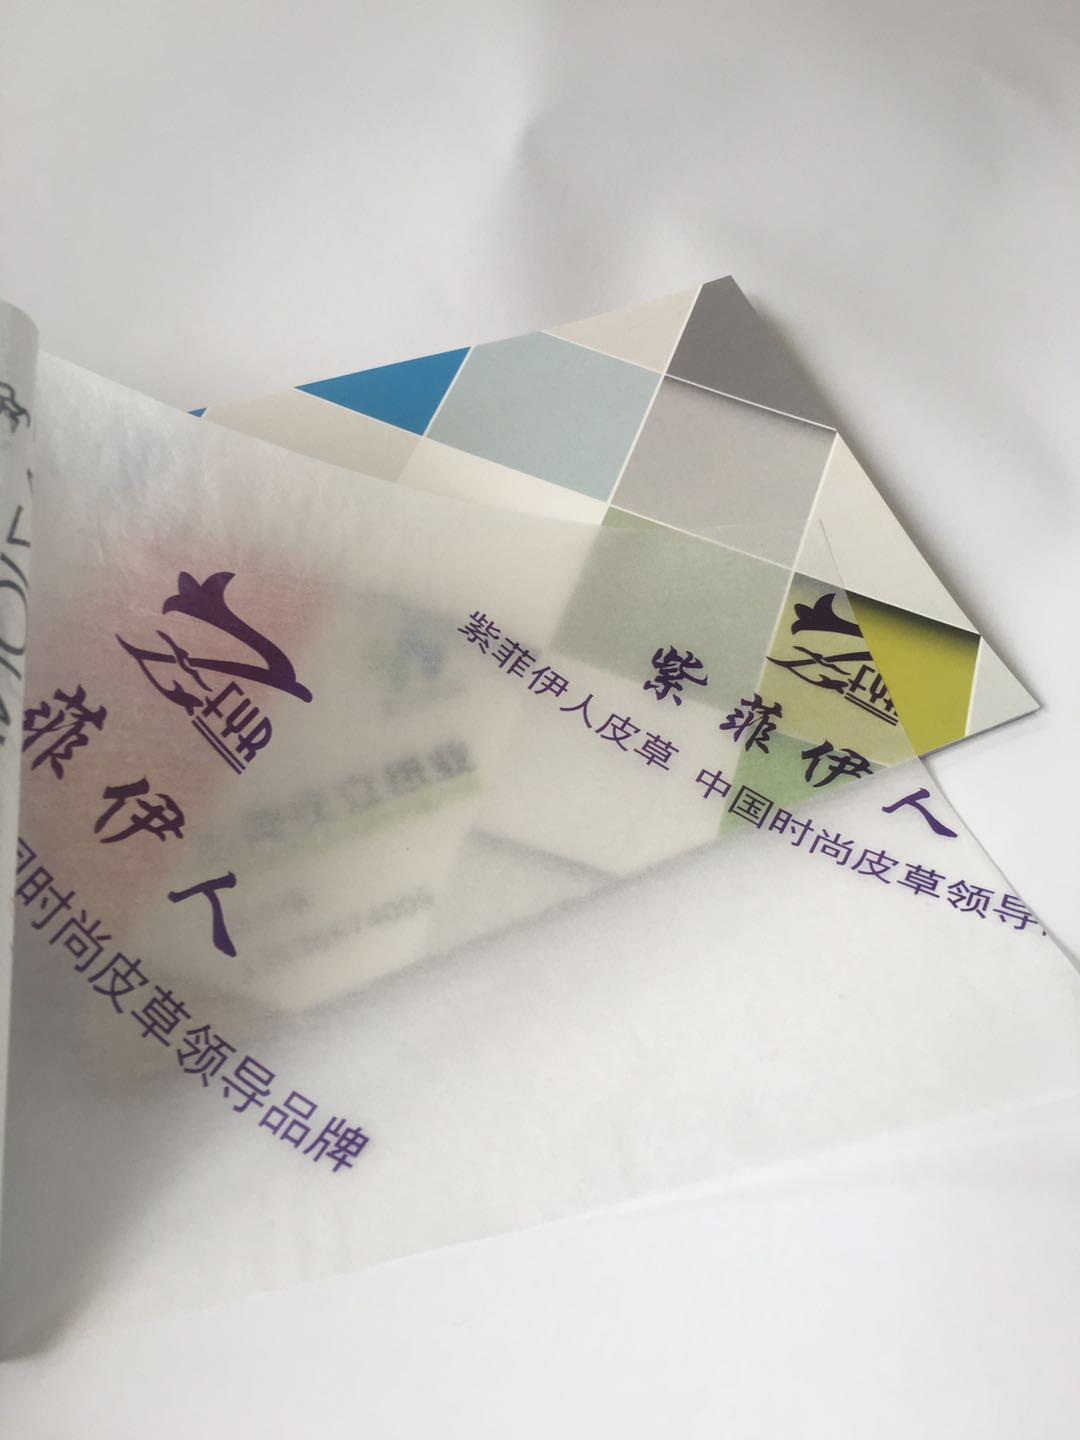 上海庄立纸业有限公司-中国国际包装展-中国包装容器展